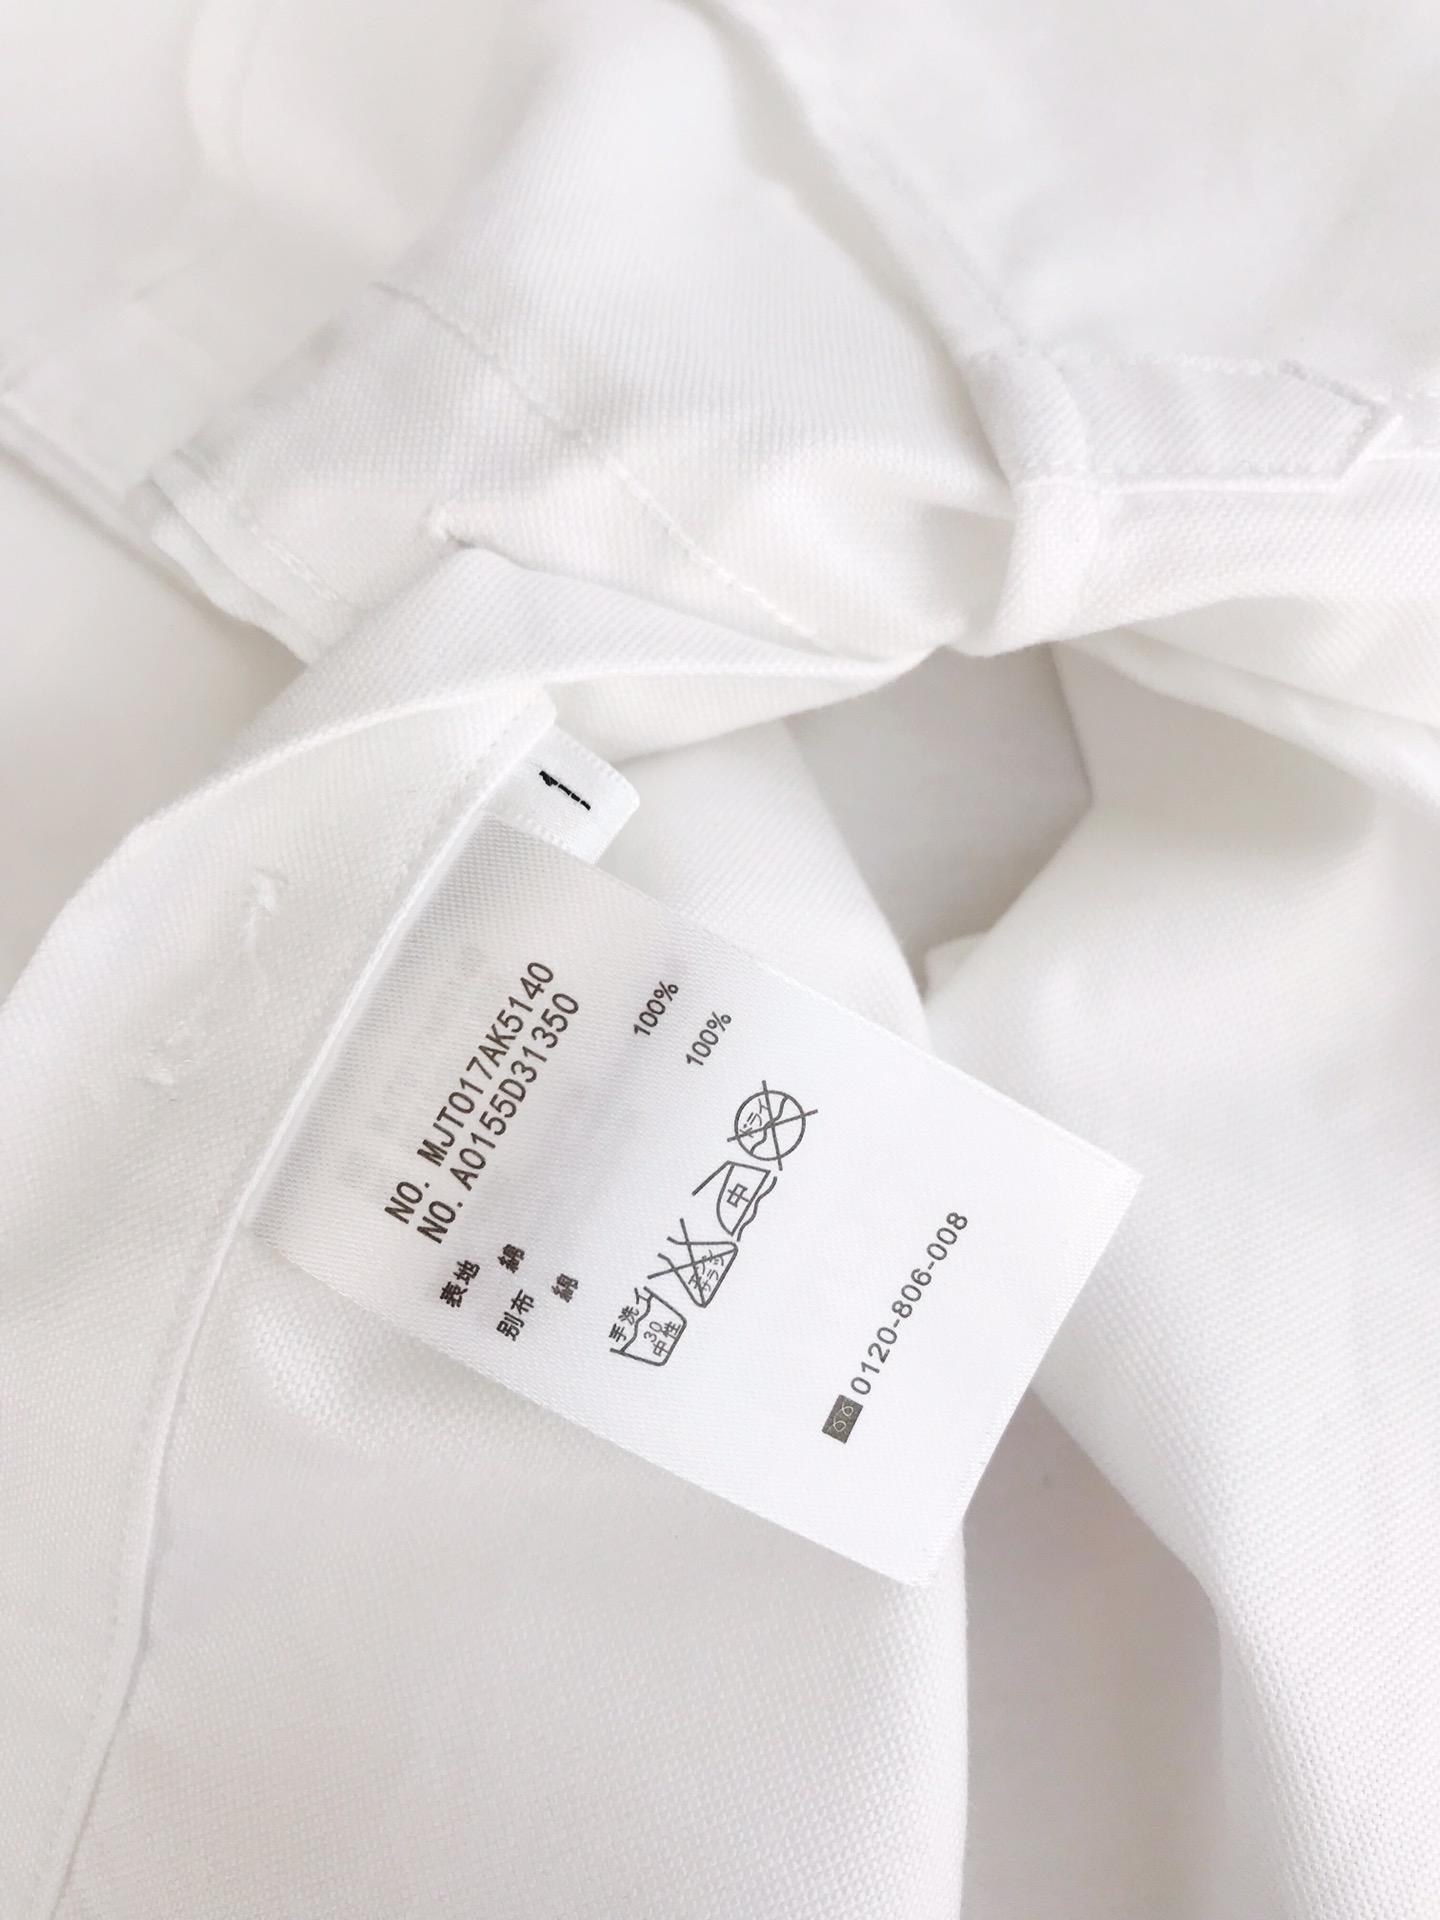 Thom Browne 汤姆·布朗 美国最的时尚品牌  口袋波浪刺绣 ➕海豚刺绣 尺码：0 1 2 3 4